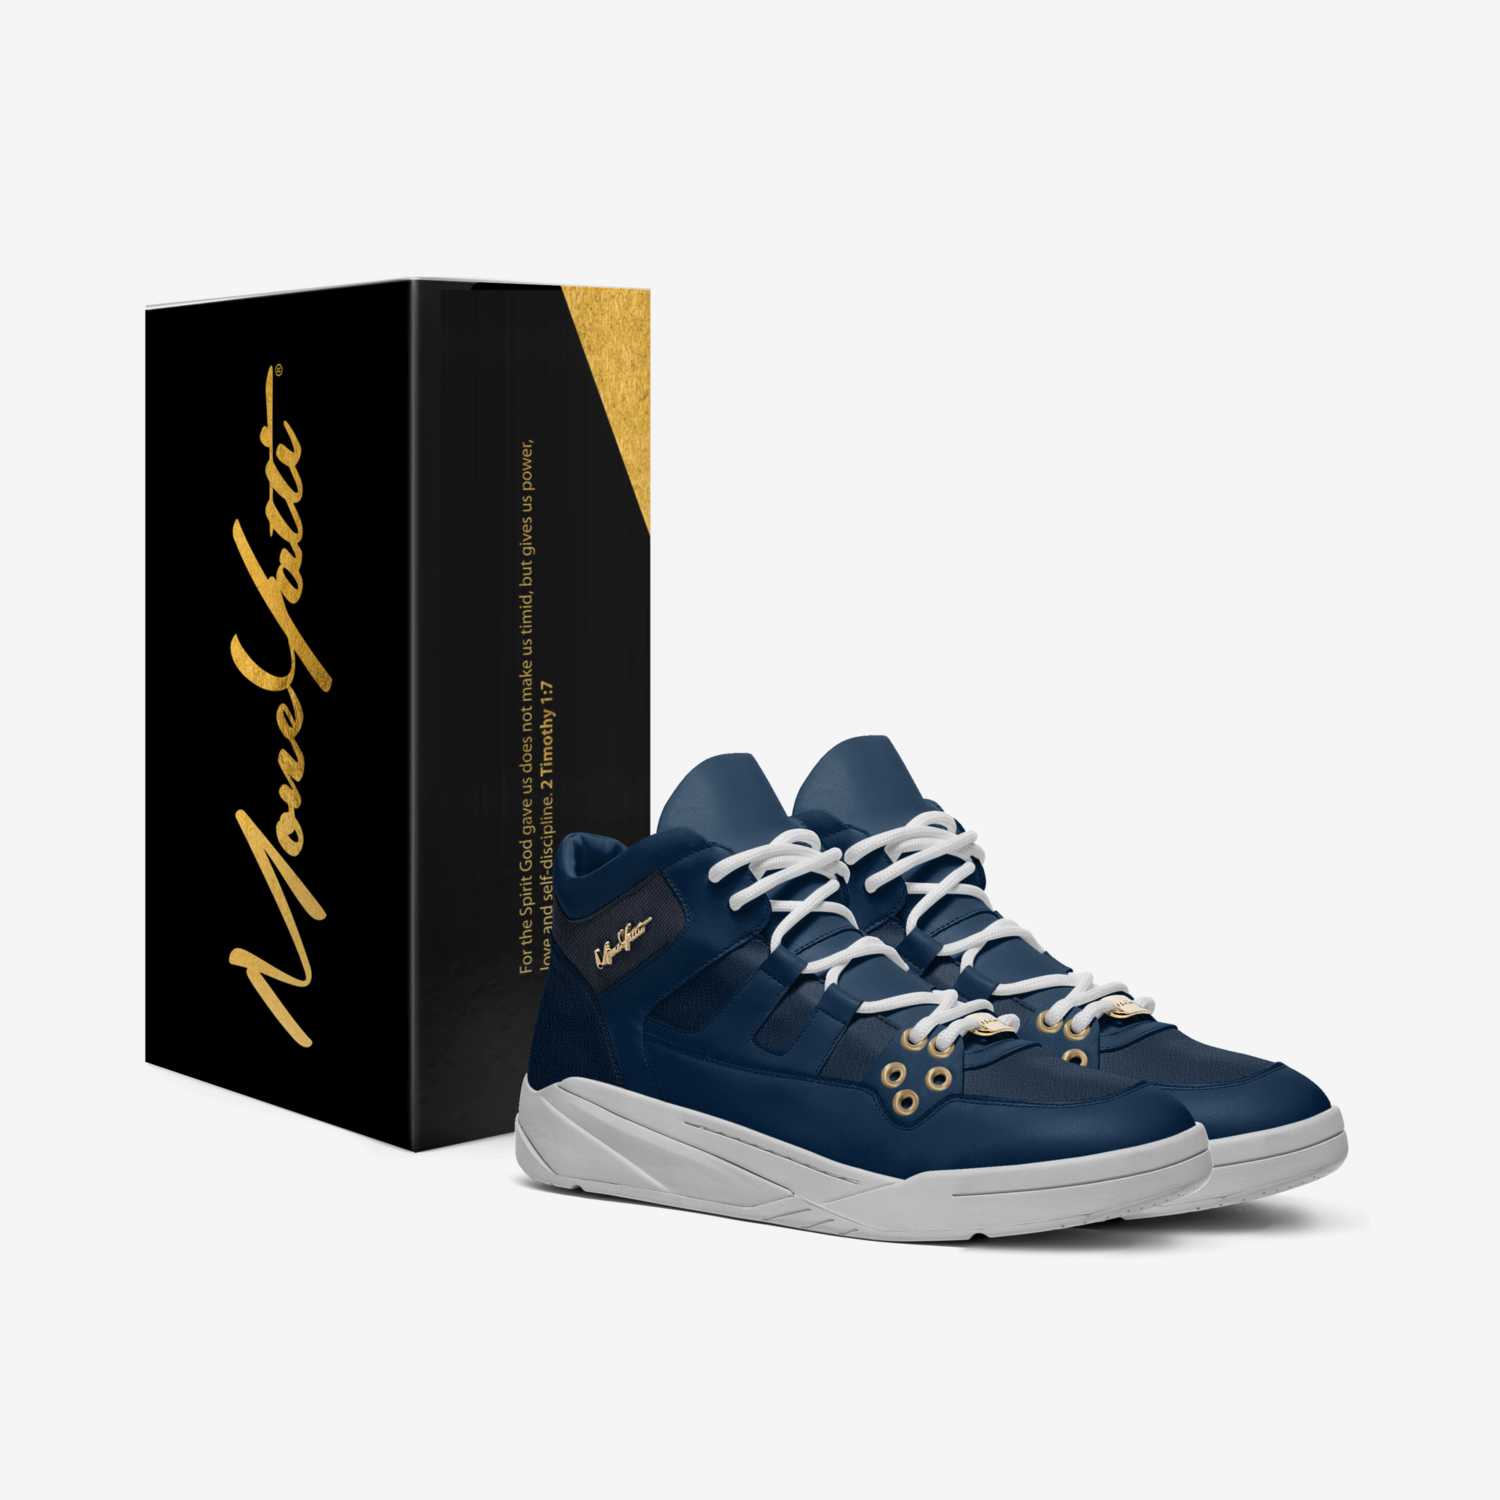 Moneyatti Drift 007 custom made in Italy shoes by Moneyatti Brand | Box view